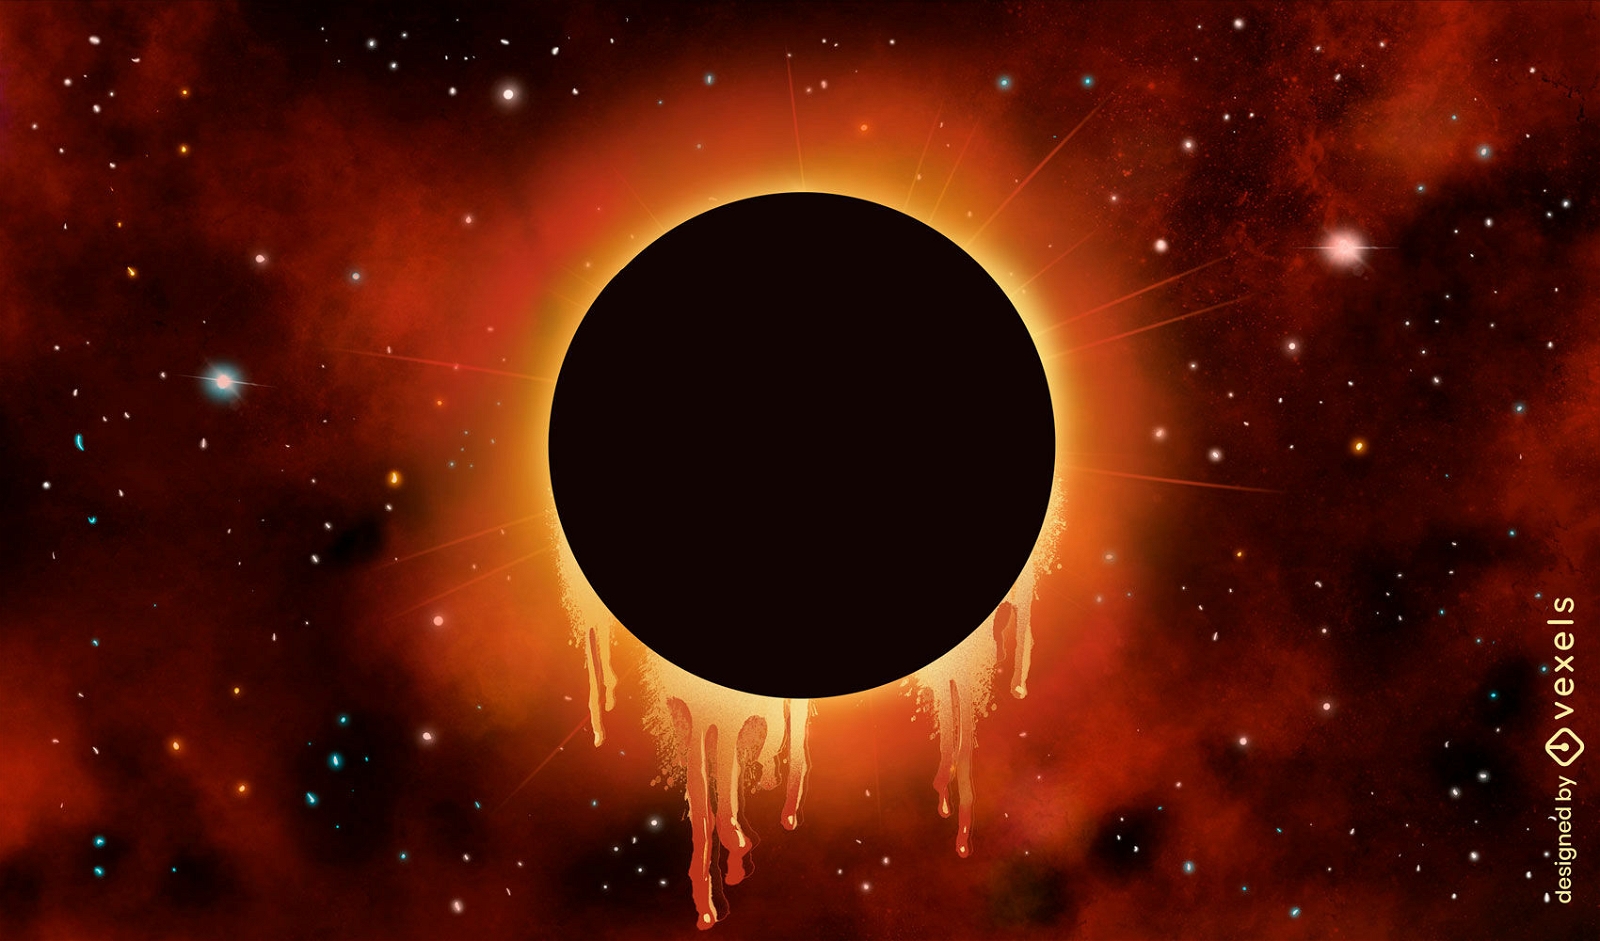 Eclipse solar no fundo da ilustração do espaço